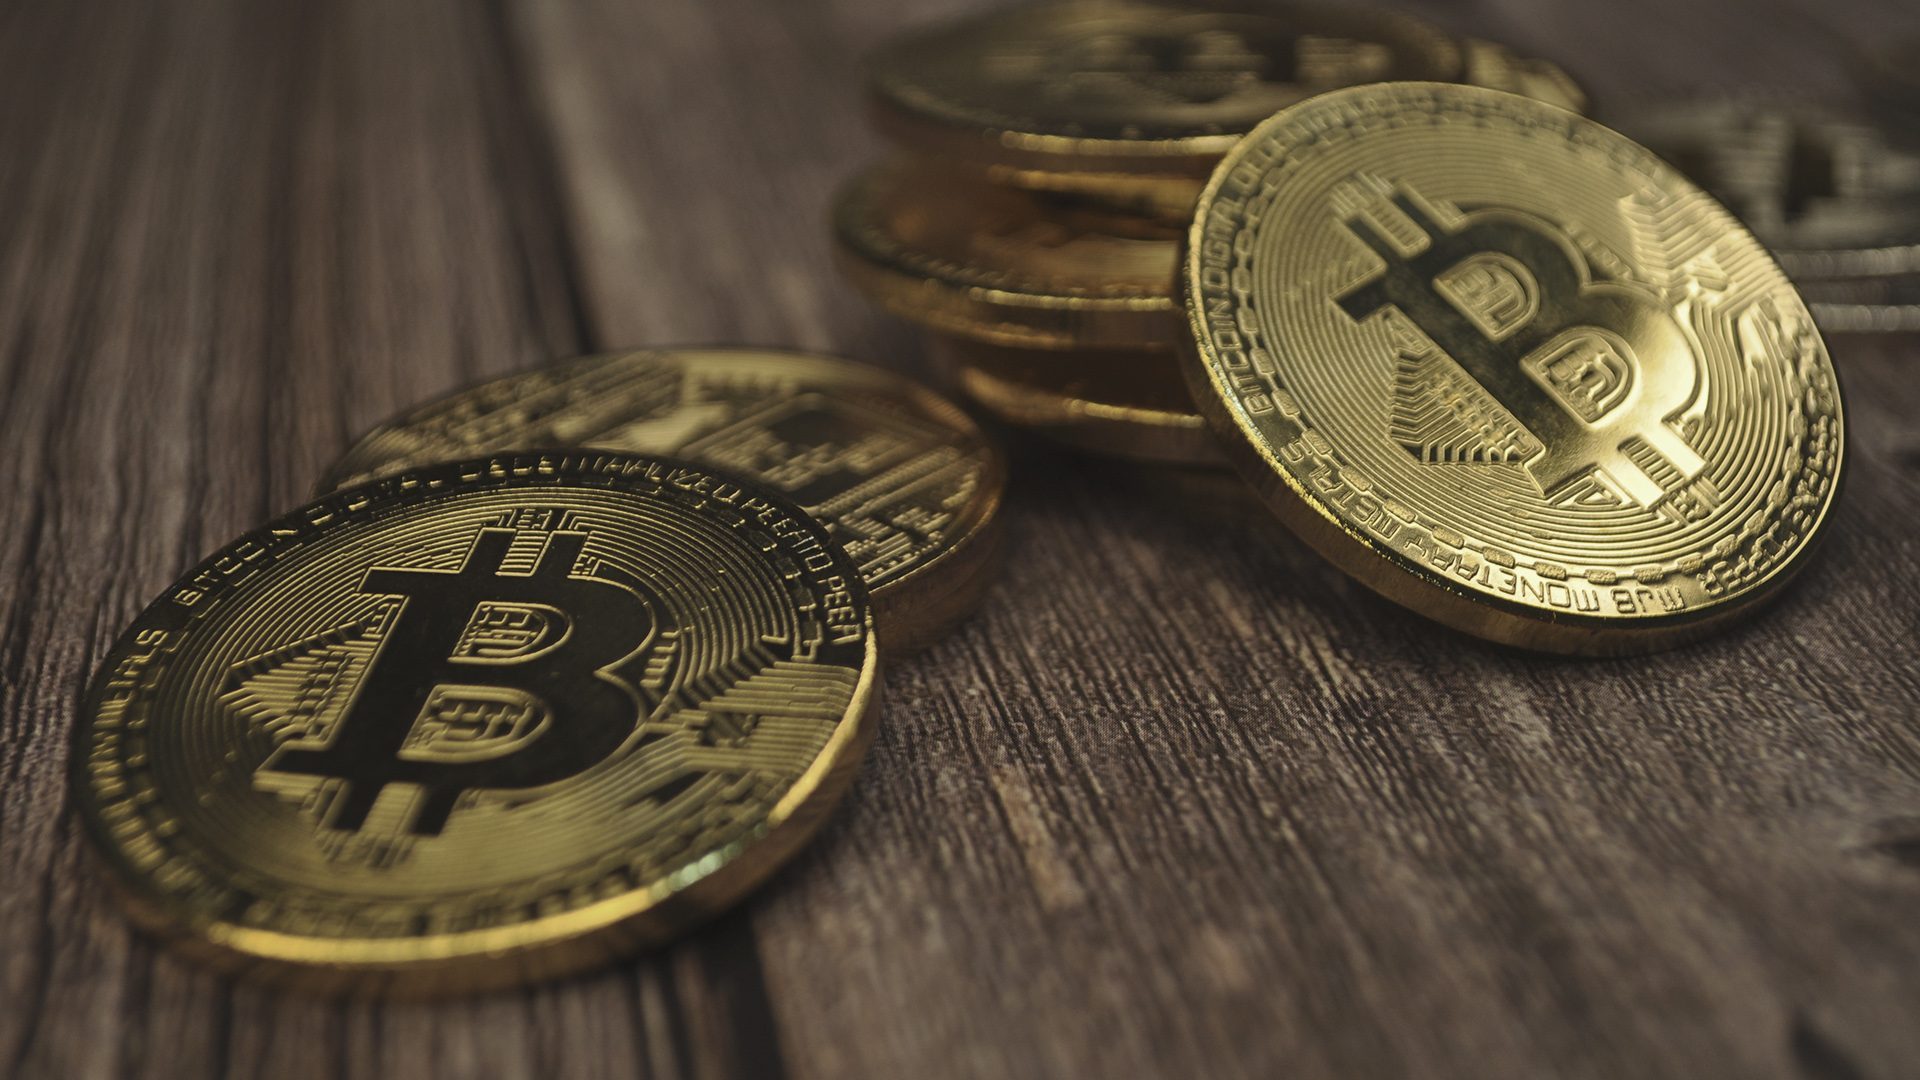 Crypto valuta på et bord.